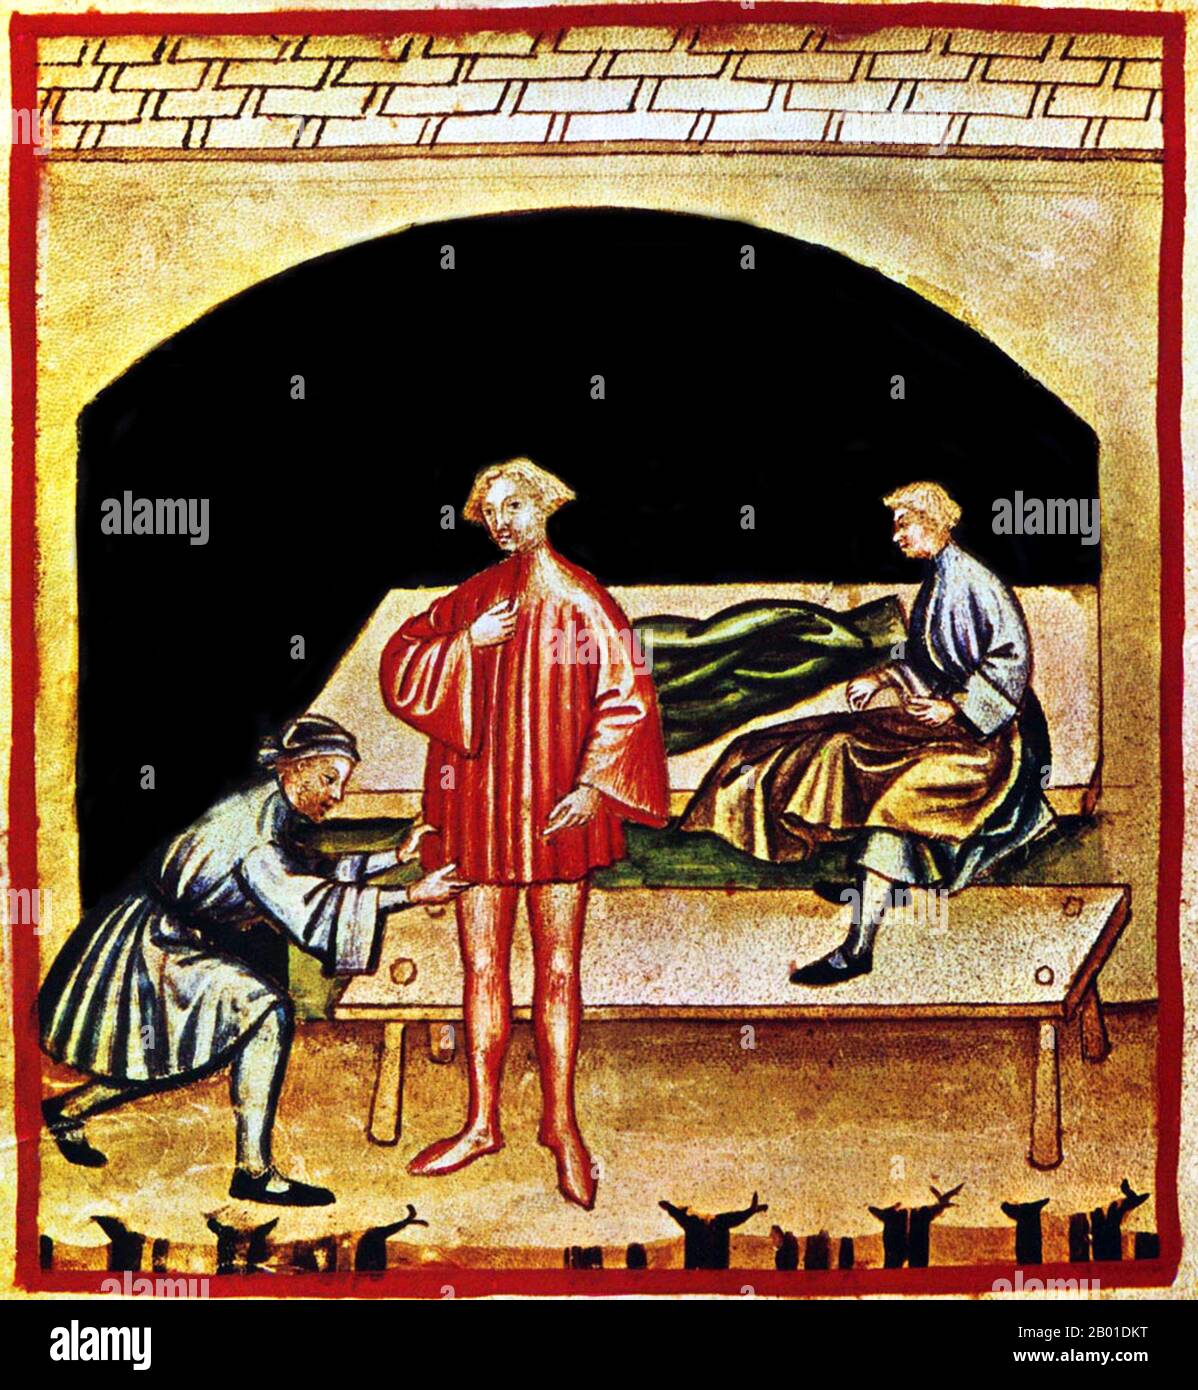 Iraq/Italia: Vestito di lana in un negozio di sarti. Illustrazione da Taqwim al-sihha di Ibn Butlan o 'mantenimento della Salute', pubblicato in Italia come Tacuinum Sanitatis, 14th ° secolo. Il Tacuinum (a volte Taccuinum) Sanitatis è un manuale medievale sulla salute e il benessere, basato sul Taqwim al-sihha, un trattato medico arabo dell'XI secolo di Ibn Butlan di Baghdad. Ibn Butlân era un medico cristiano nato a Bagdad e morto nel 1068. Egli ha esposto sei elementi necessari per mantenere la salute quotidiana. Foto Stock